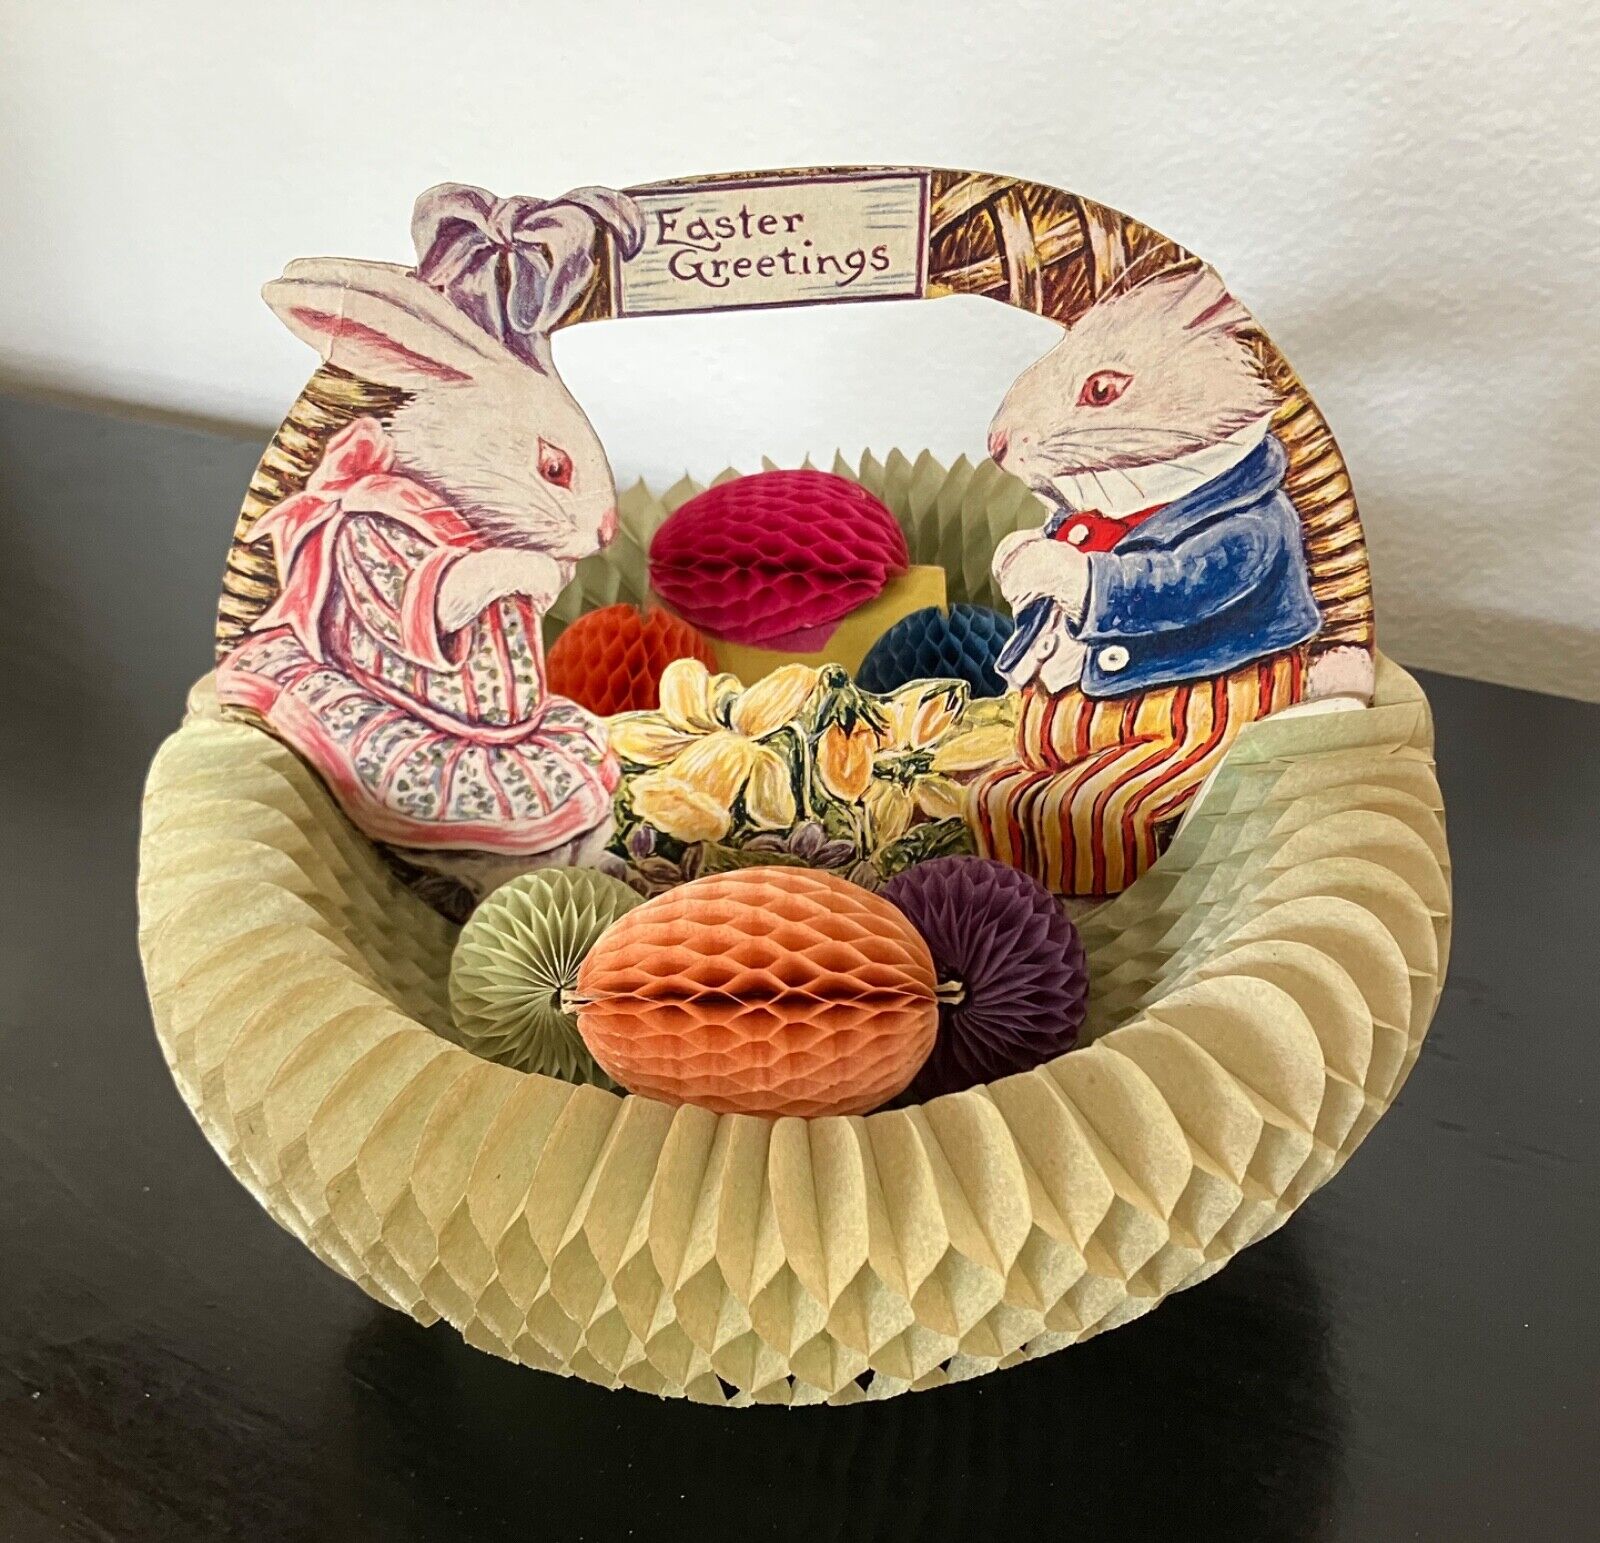 1925 Antique Beistle Diecut Honeycomb Easter Greetings basket